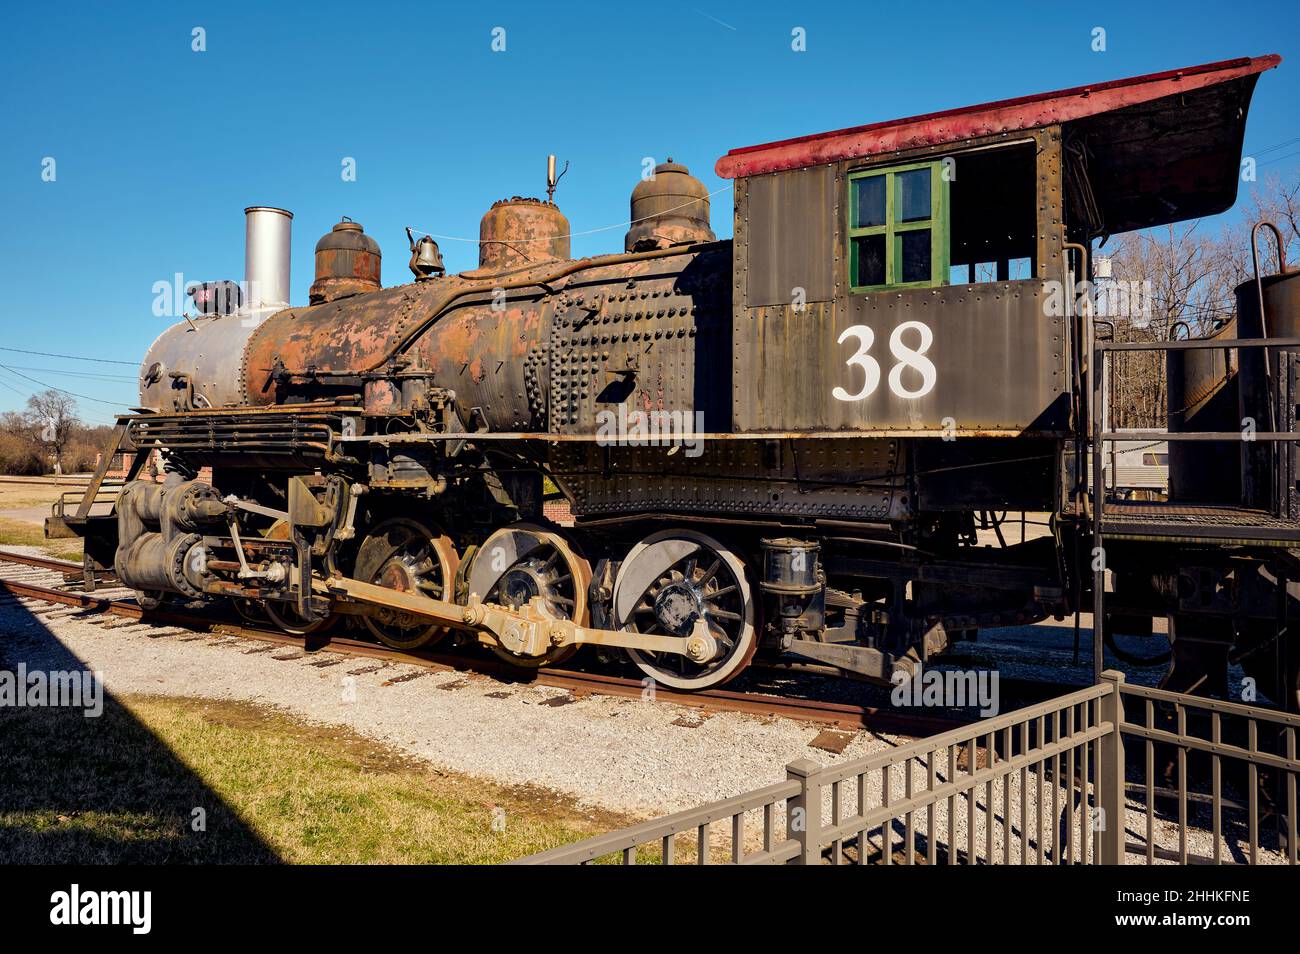 Alte alte alte Dampflokomotive oder Lokomotive mit einer 2-8-0-Radkonfiguration, die Anfang 1900s in Alabama, USA, im Einsatz war. Stockfoto